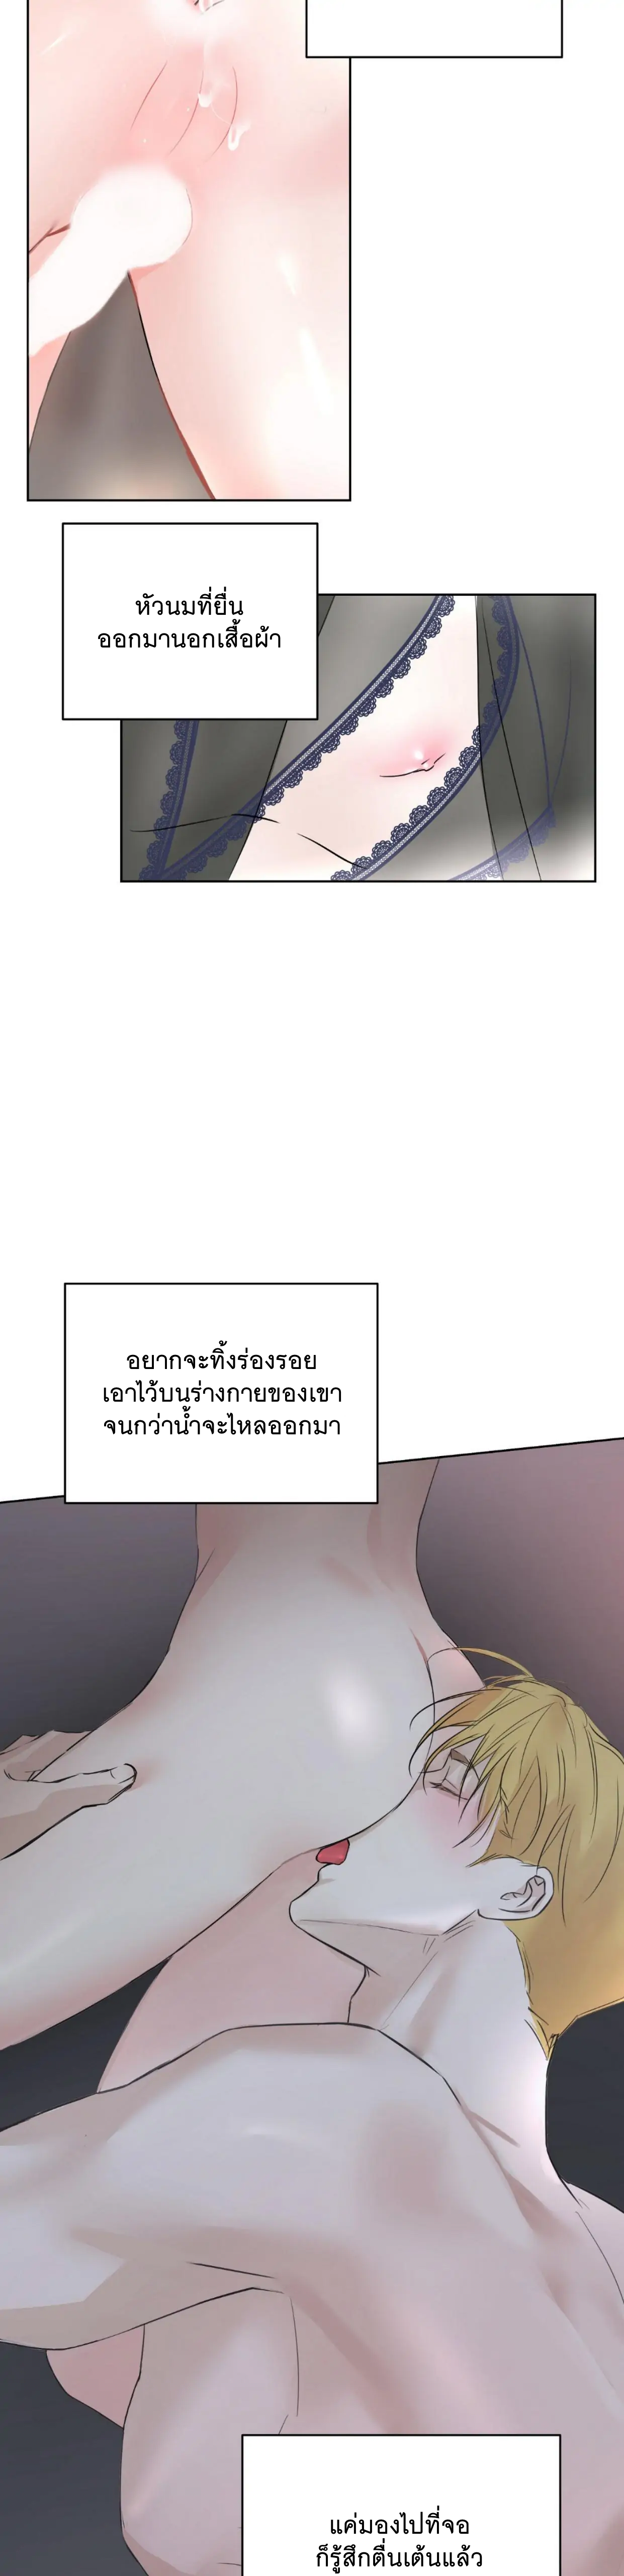 Camboy Bunny 2 (26)